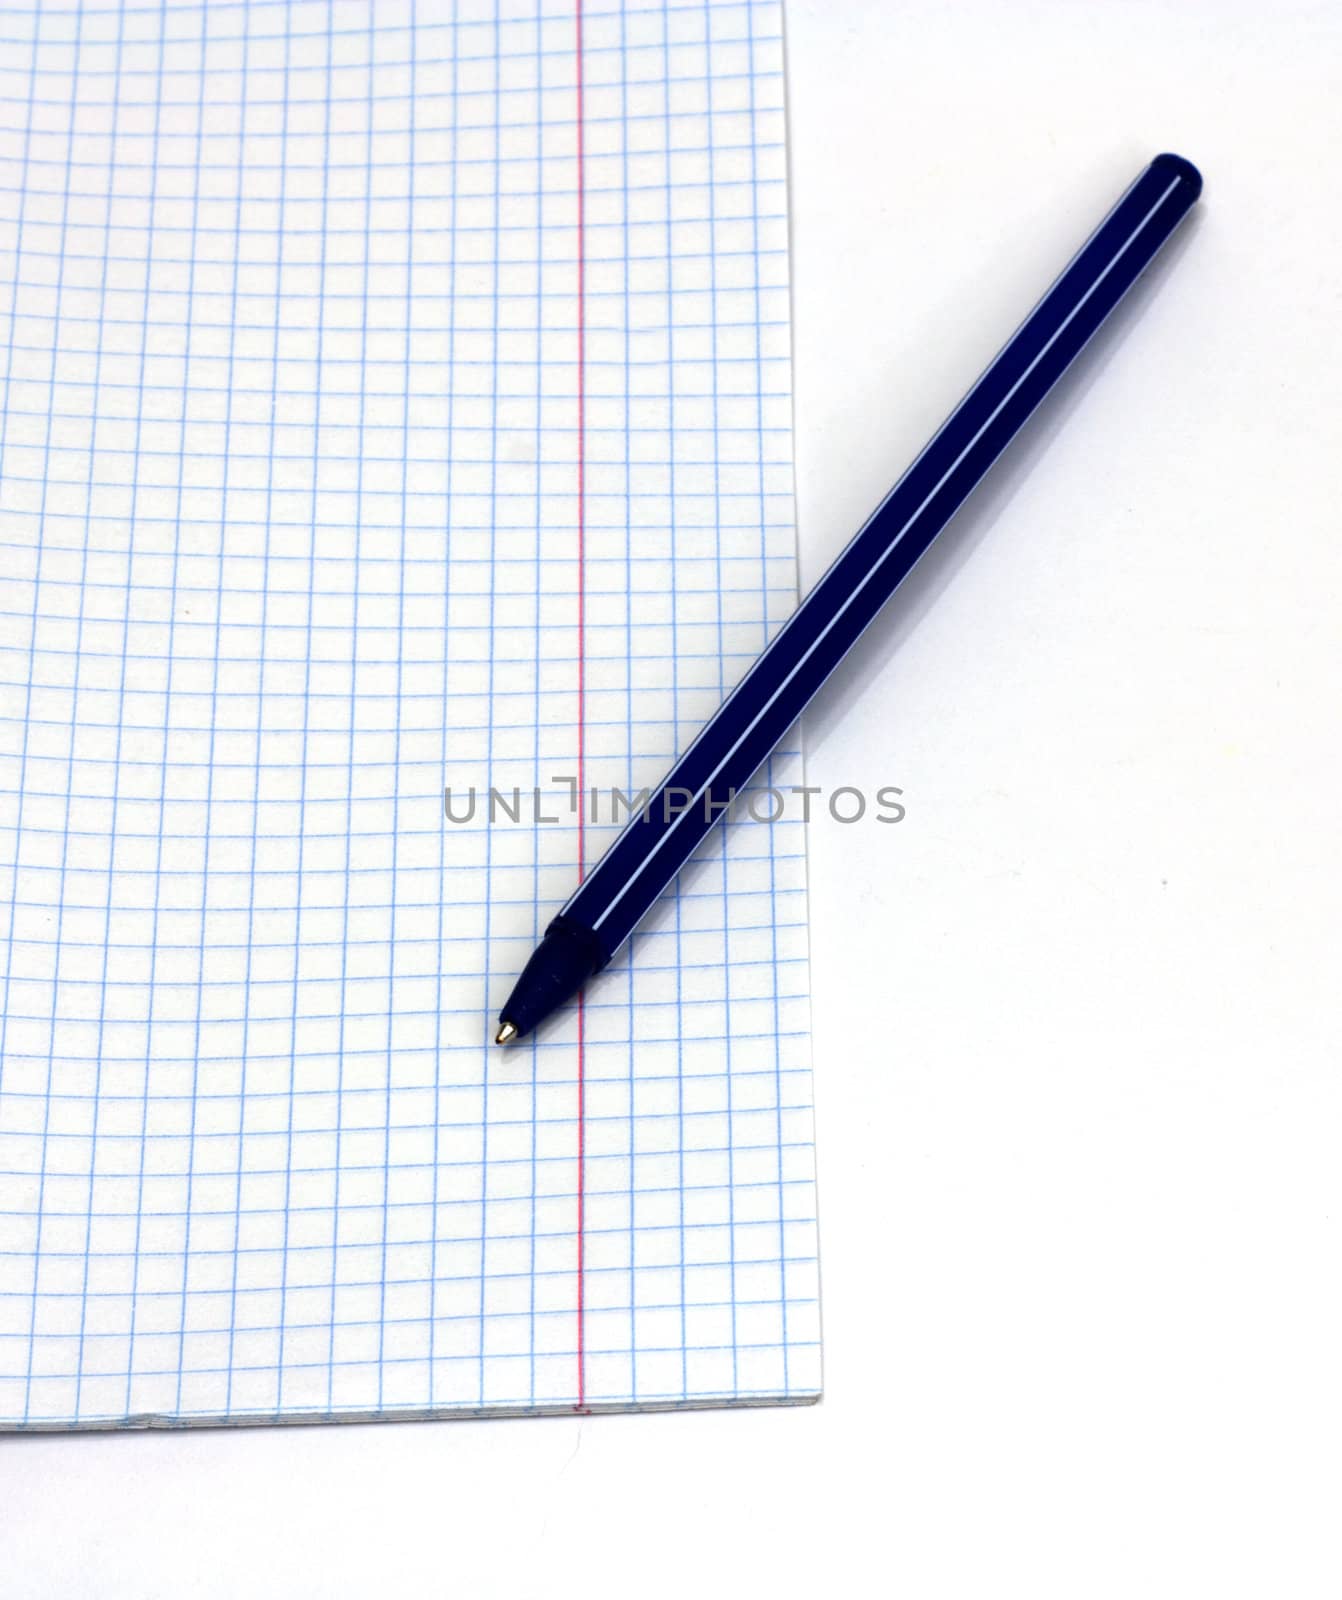 Notebook and blue pen  by schankz